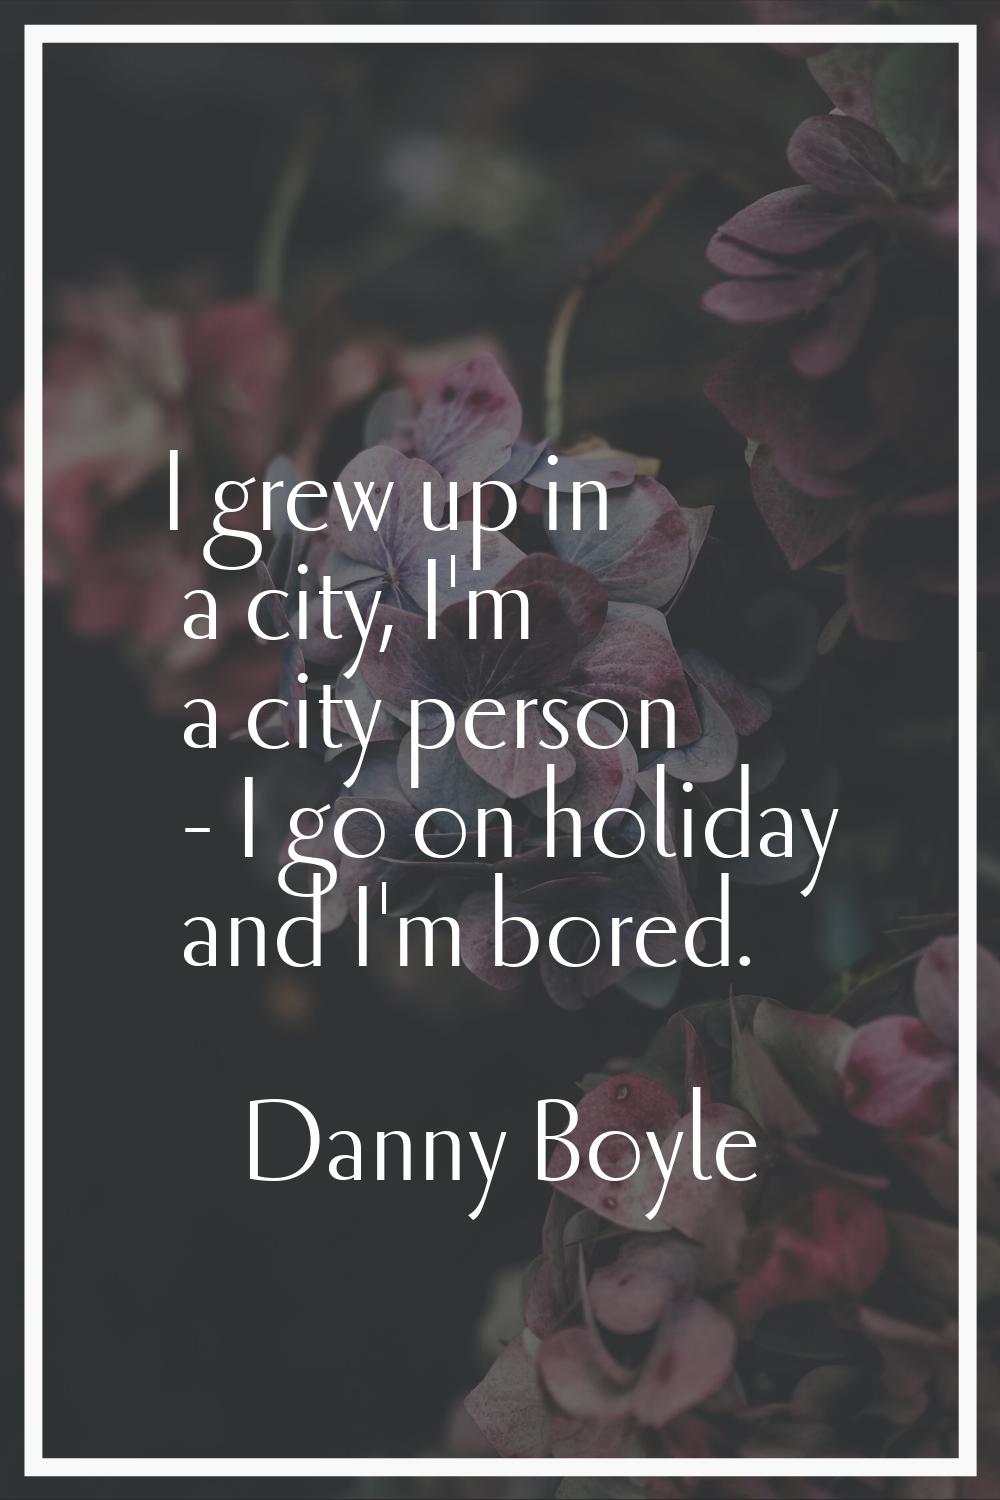 I grew up in a city, I'm a city person - I go on holiday and I'm bored.